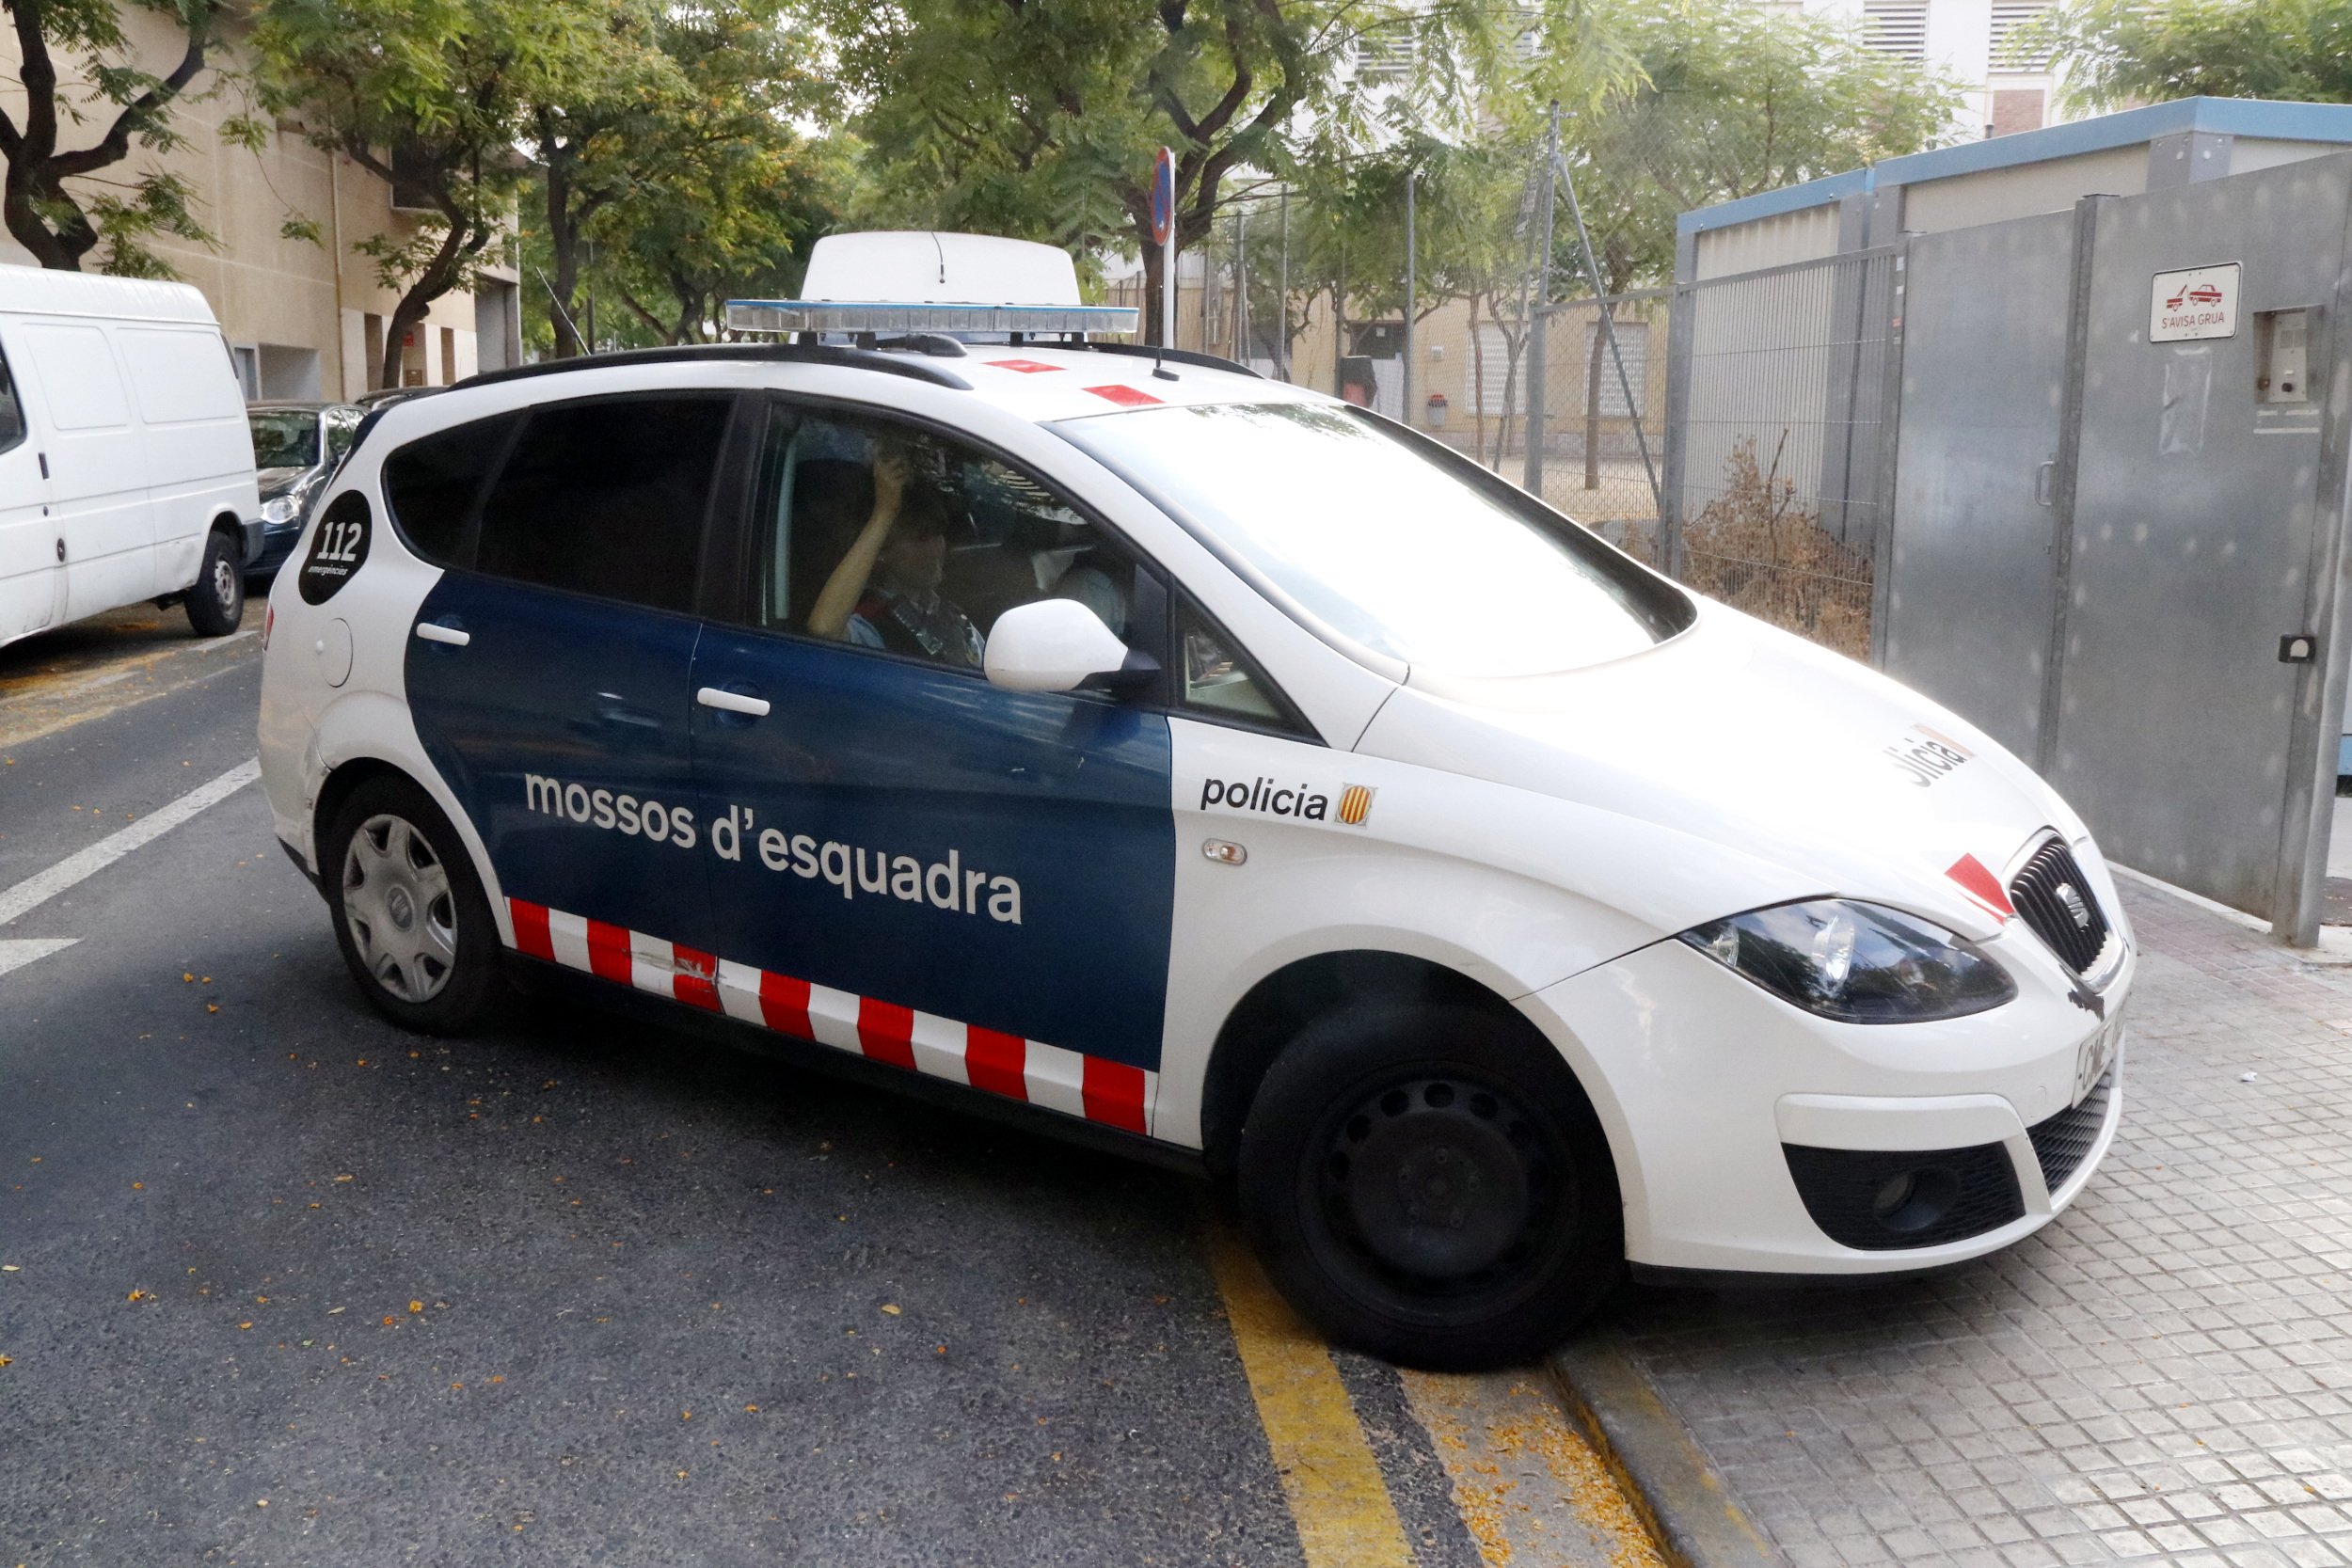 En prisión por atracar establecimientos a punta de navaja en Vilafranca del Penedès